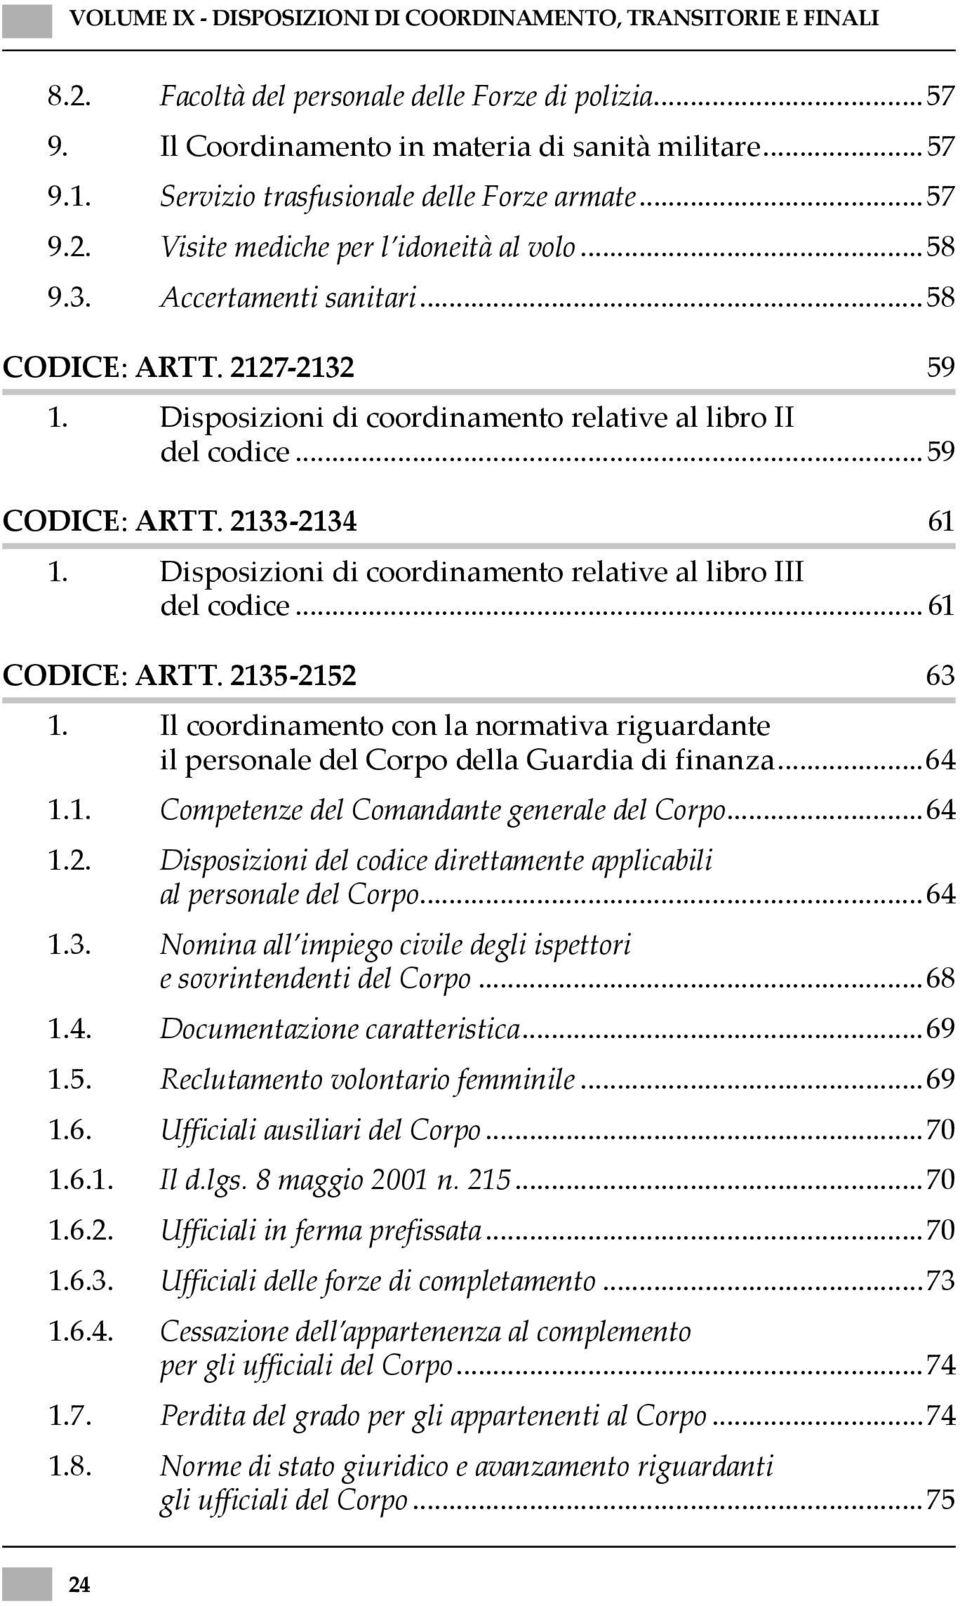 Disposizioni di coordinamento relative al libro II del codice...59 CODICE: ARTT. 2133-2134 61 1. Disposizioni di coordinamento relative al libro III del codice... 61 CODICE: ARTT. 2135-2152 63 1.